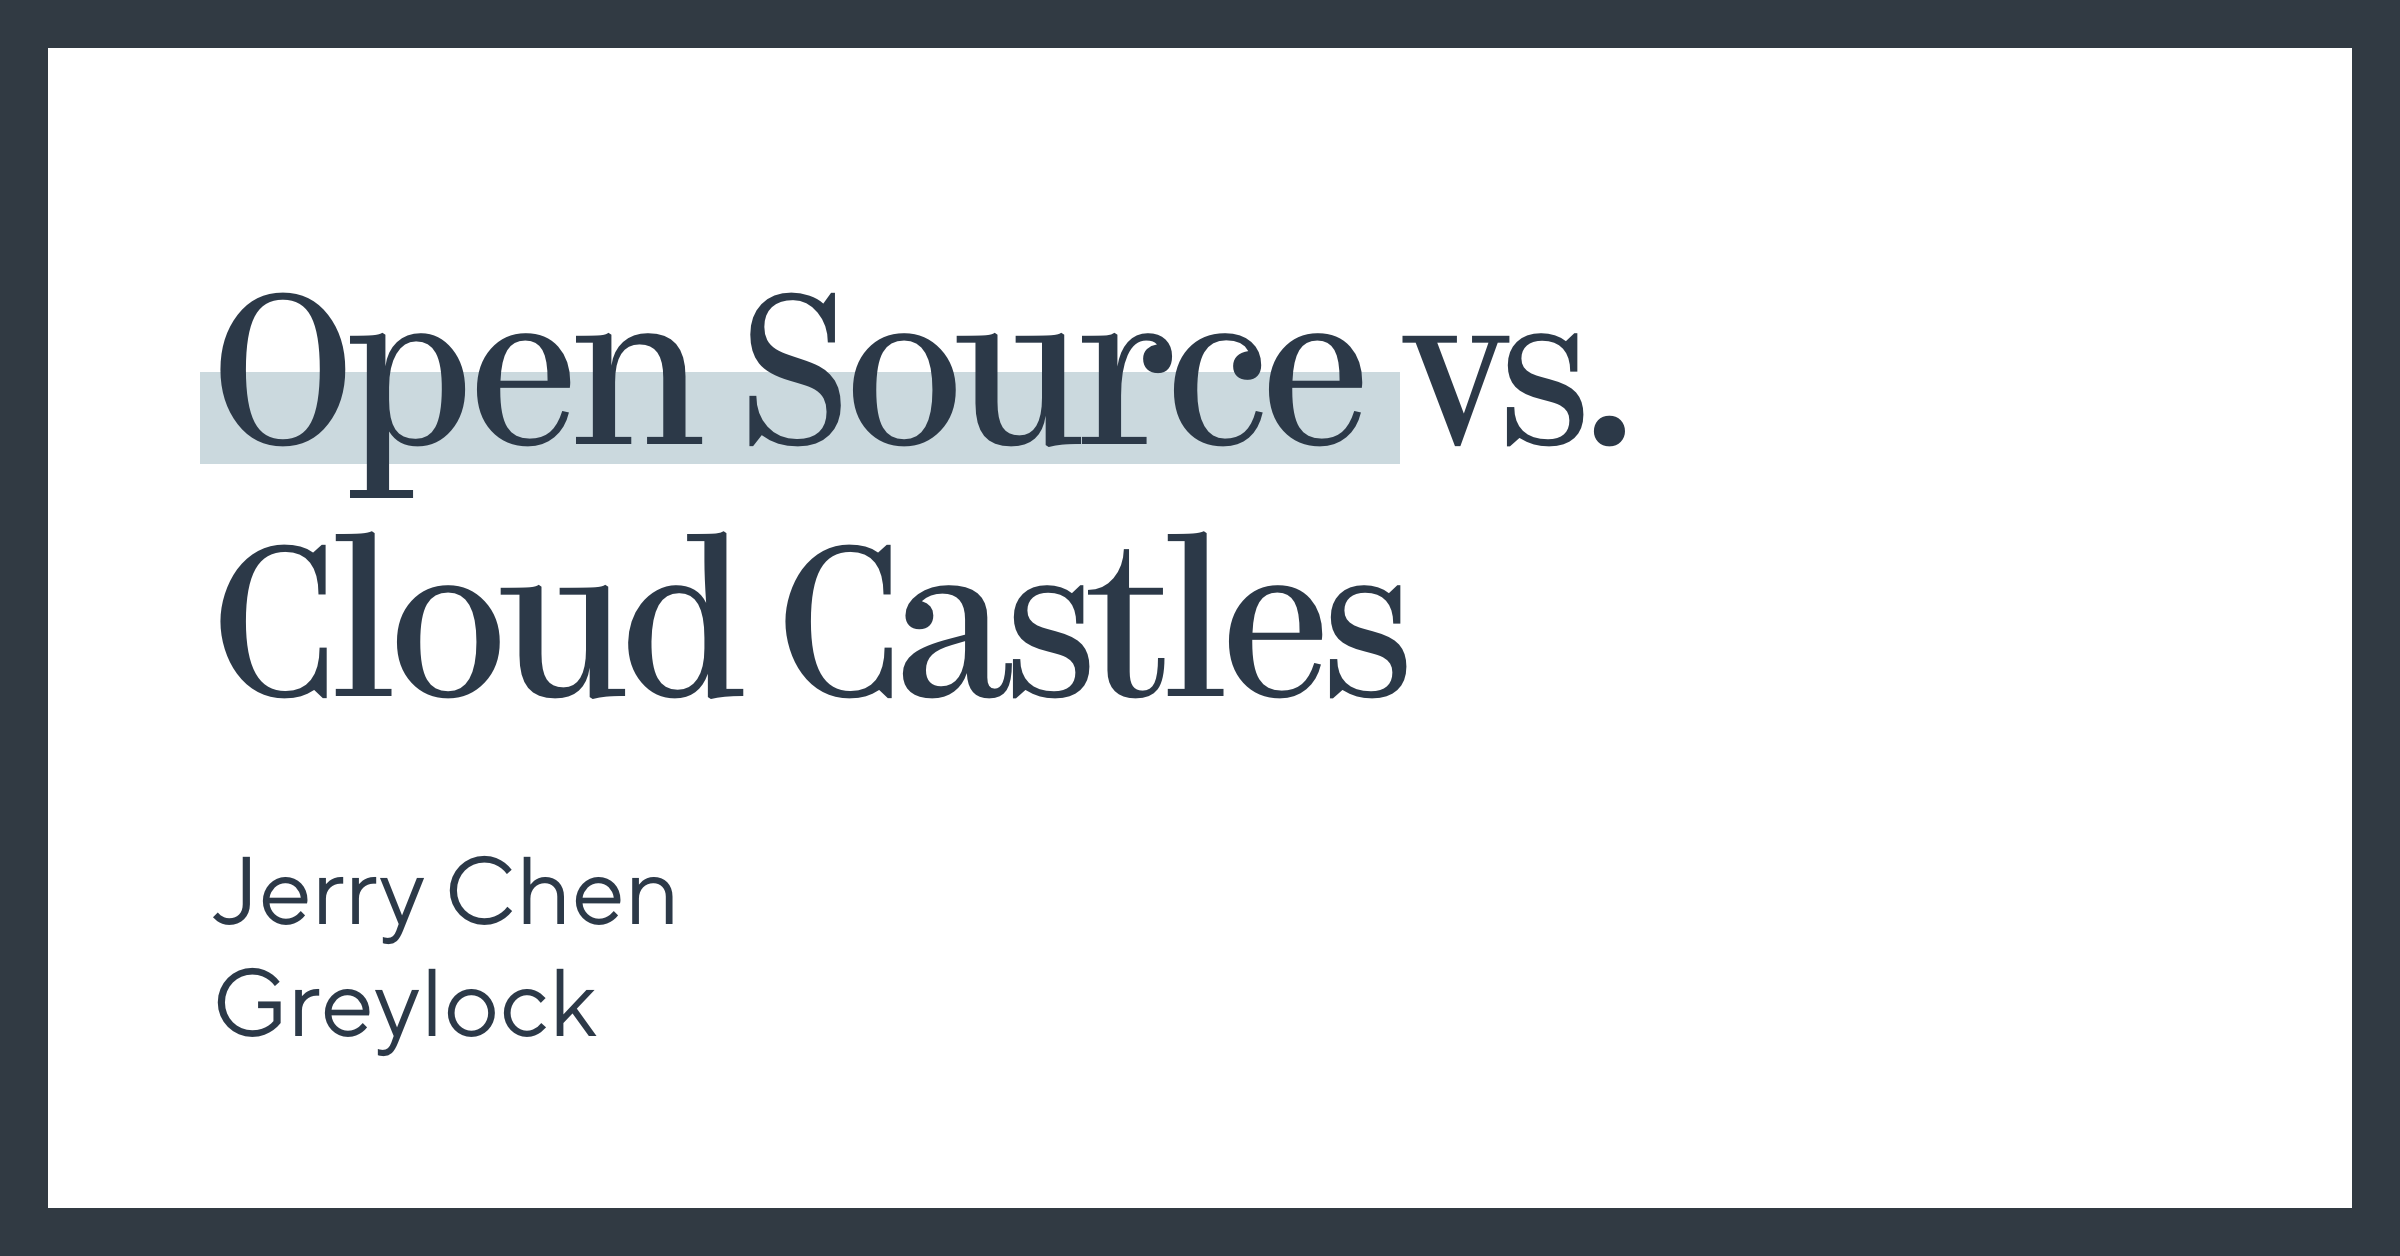  Open Source vs. Cloud Castles